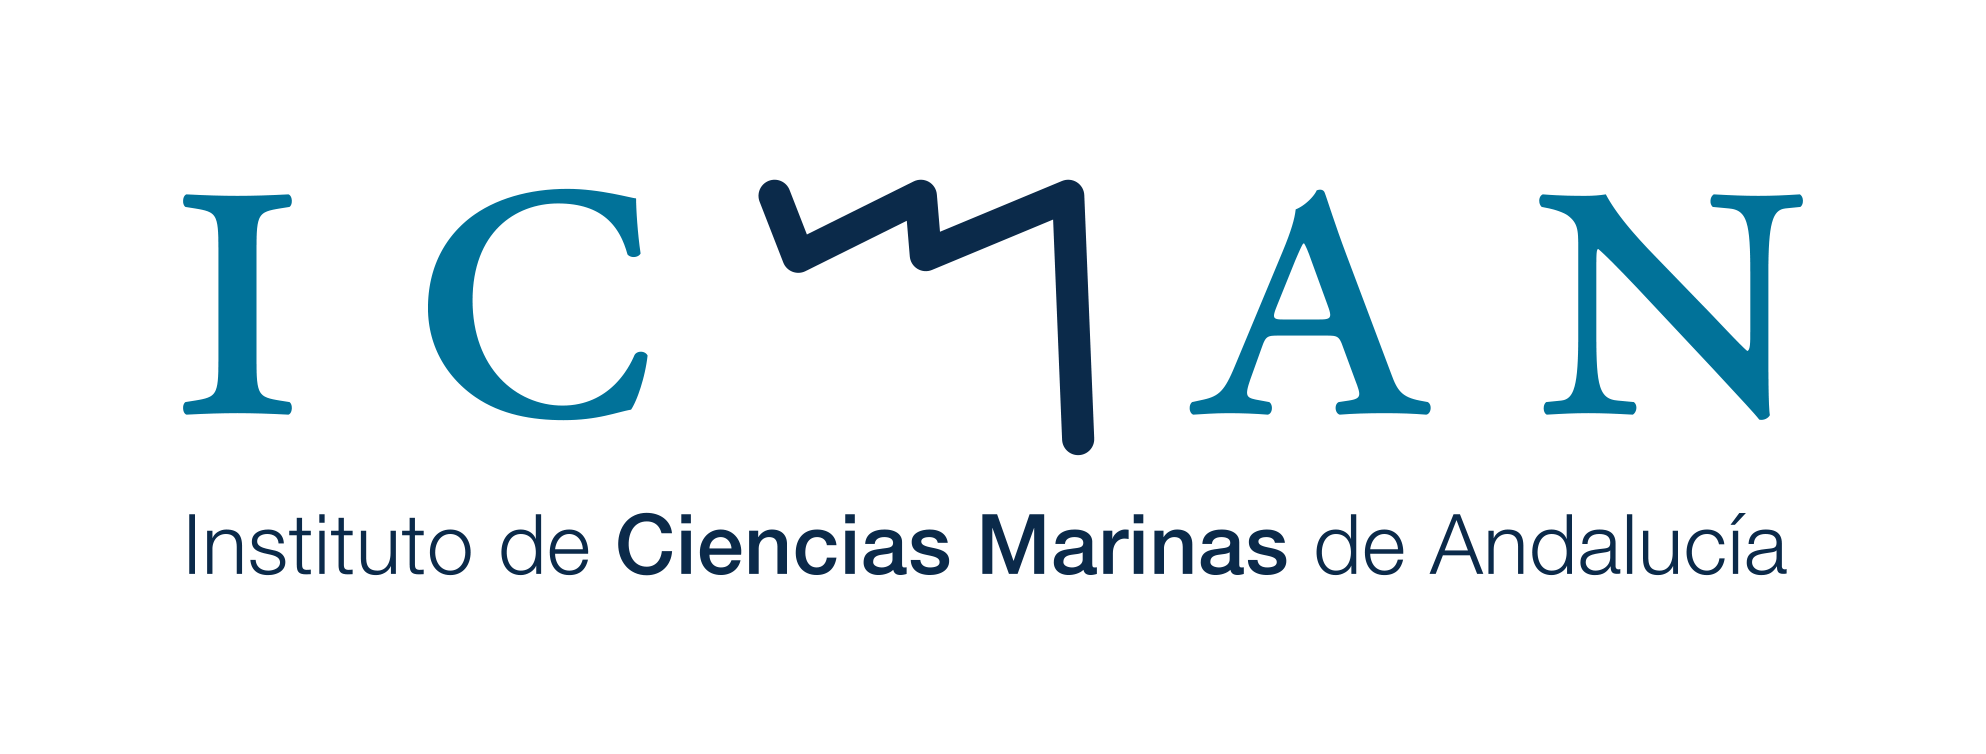 Logotipo ICMAN con letras